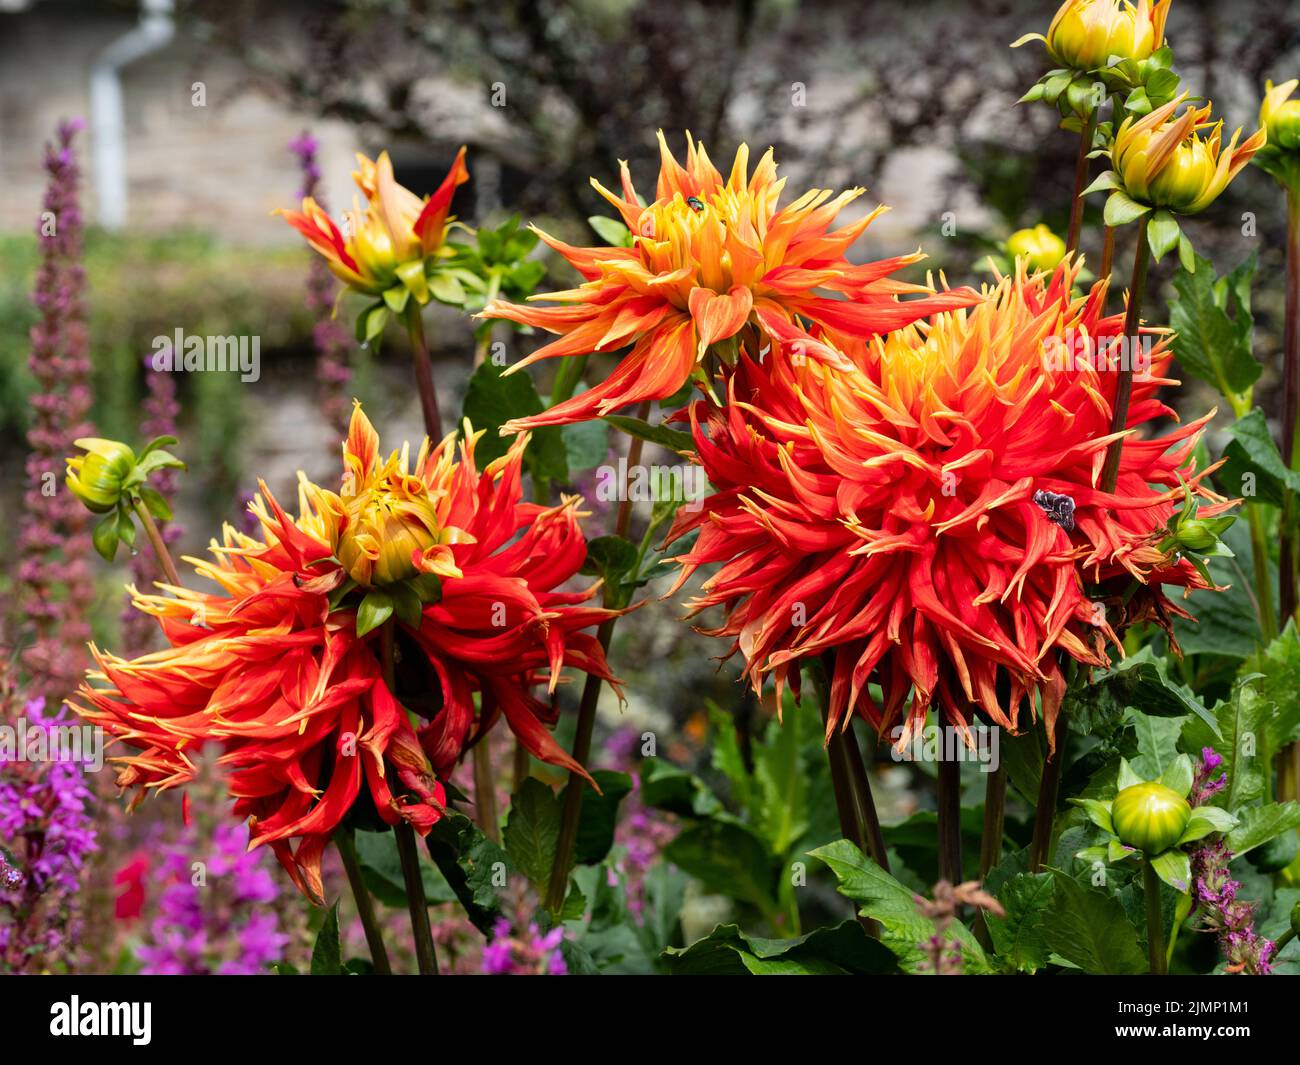 Grande, colorido rojo y amarillo flor de la dahlia del cactus, Dahlia 'Show and Tell' Foto de stock